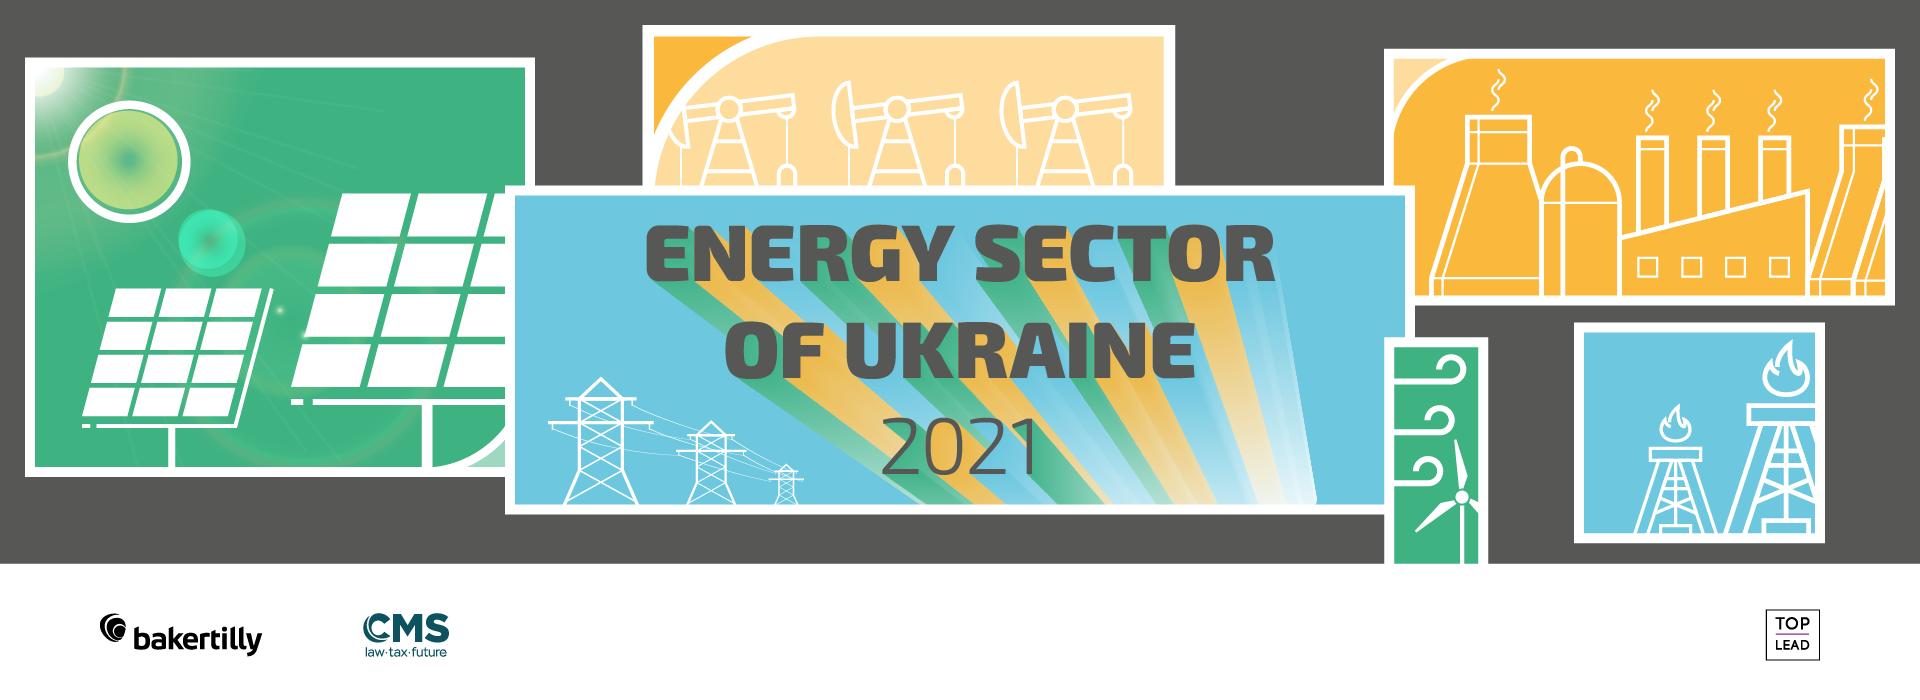 Top Lead випустила інфографічне дослідження “Енергетика України 2021”